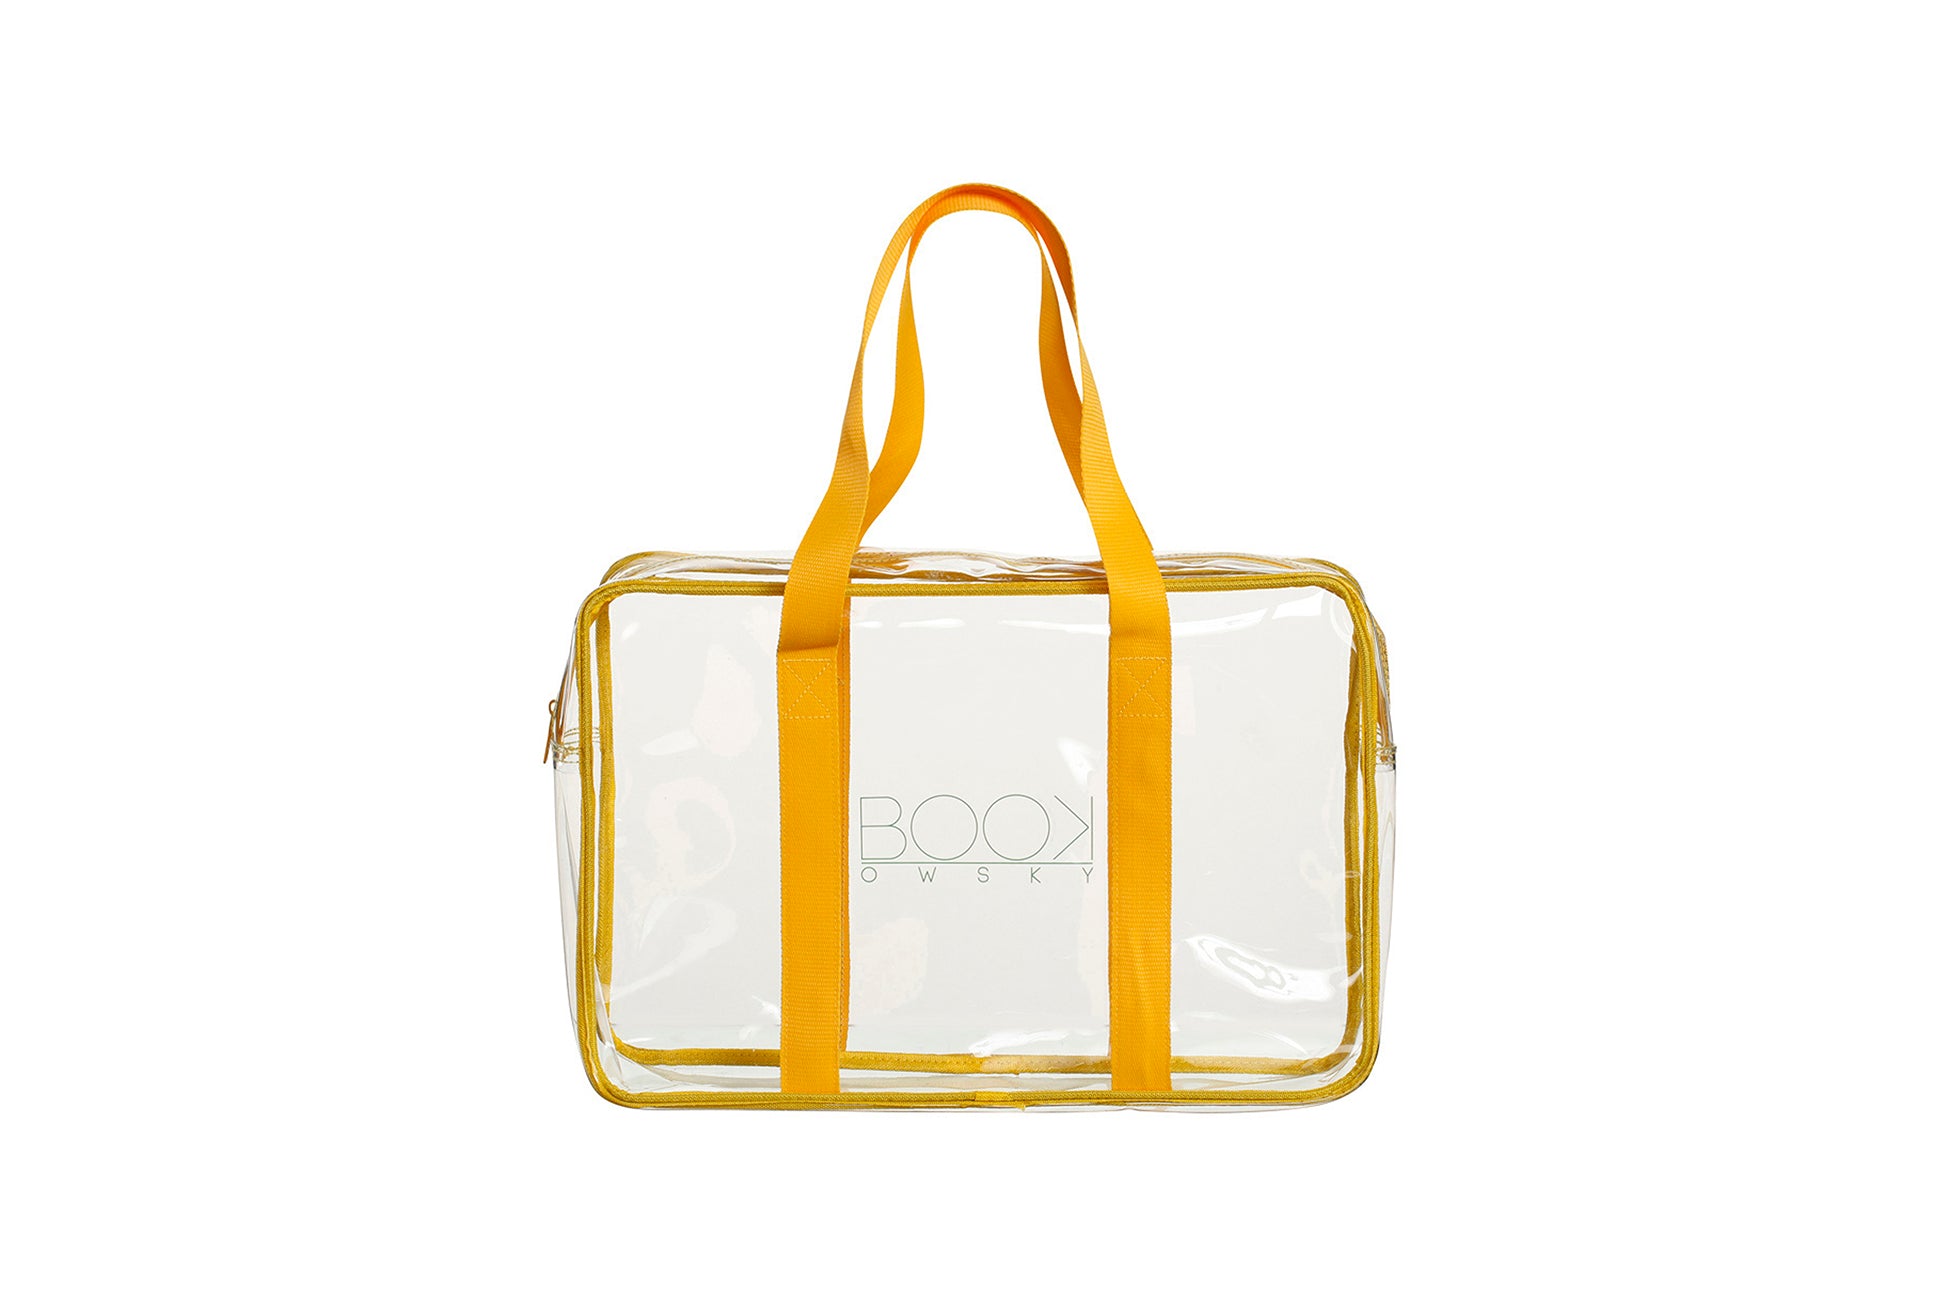 Durchsichtige transparente Bibtasche Unitasche Bibliothekstasche Schönfelder-Tasche gelb PVC bag Longhandle 